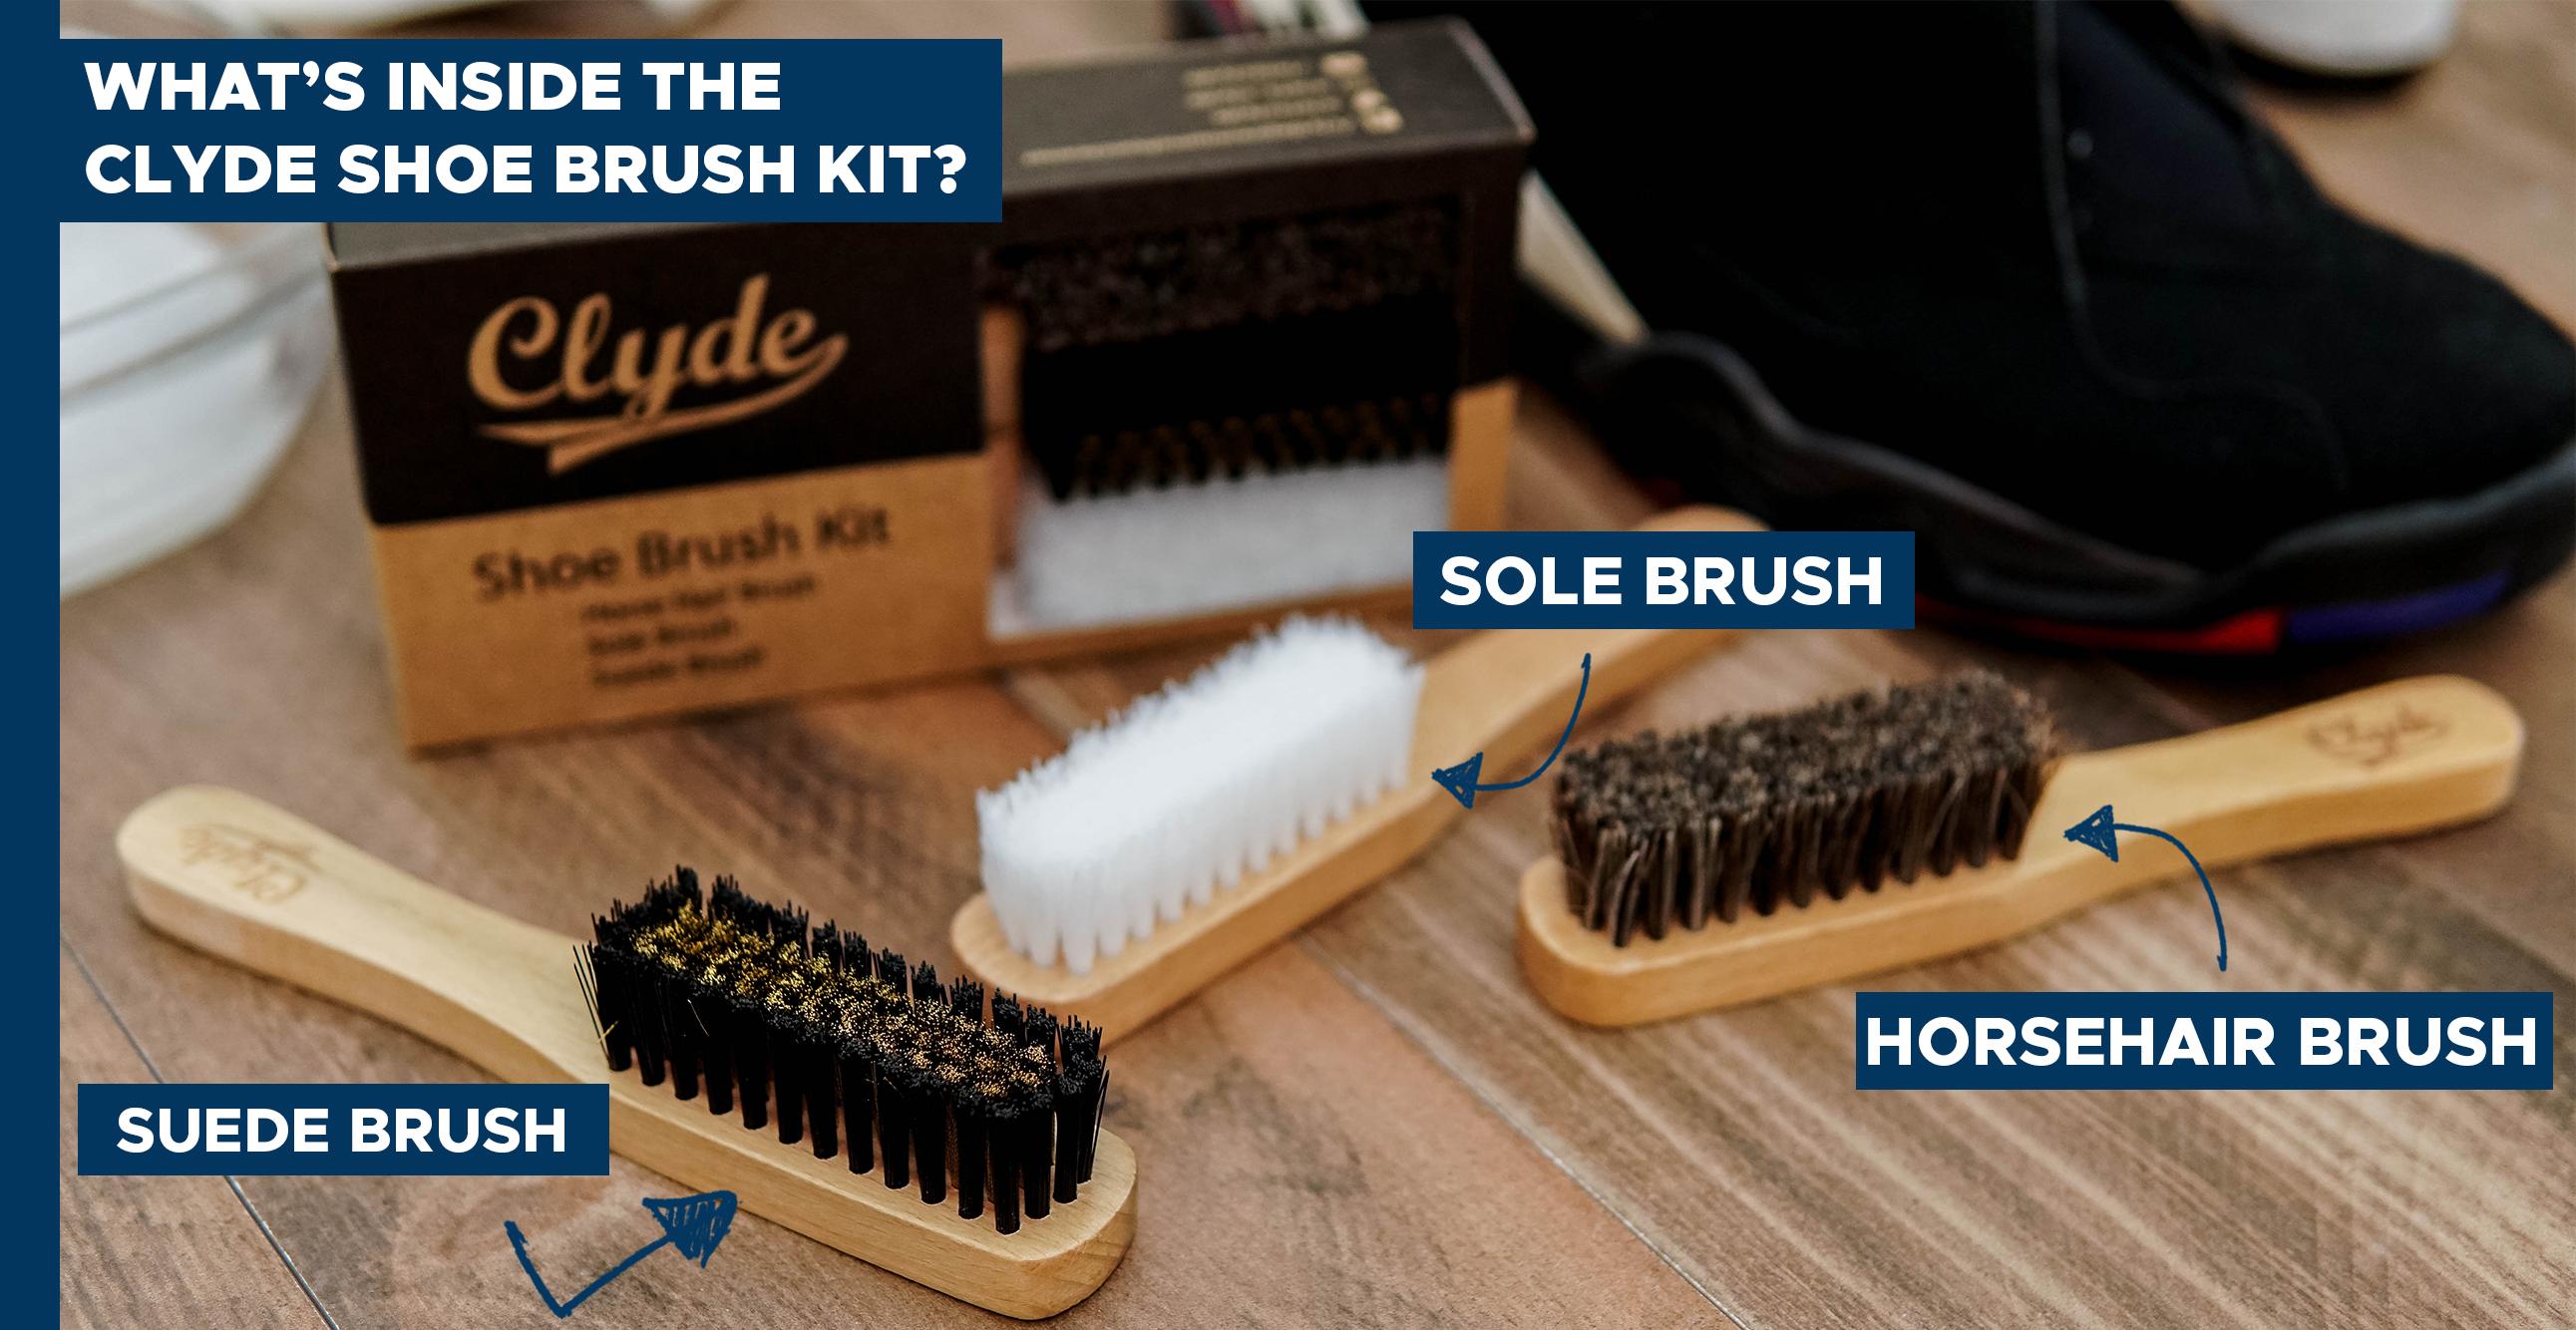 suede brush kit